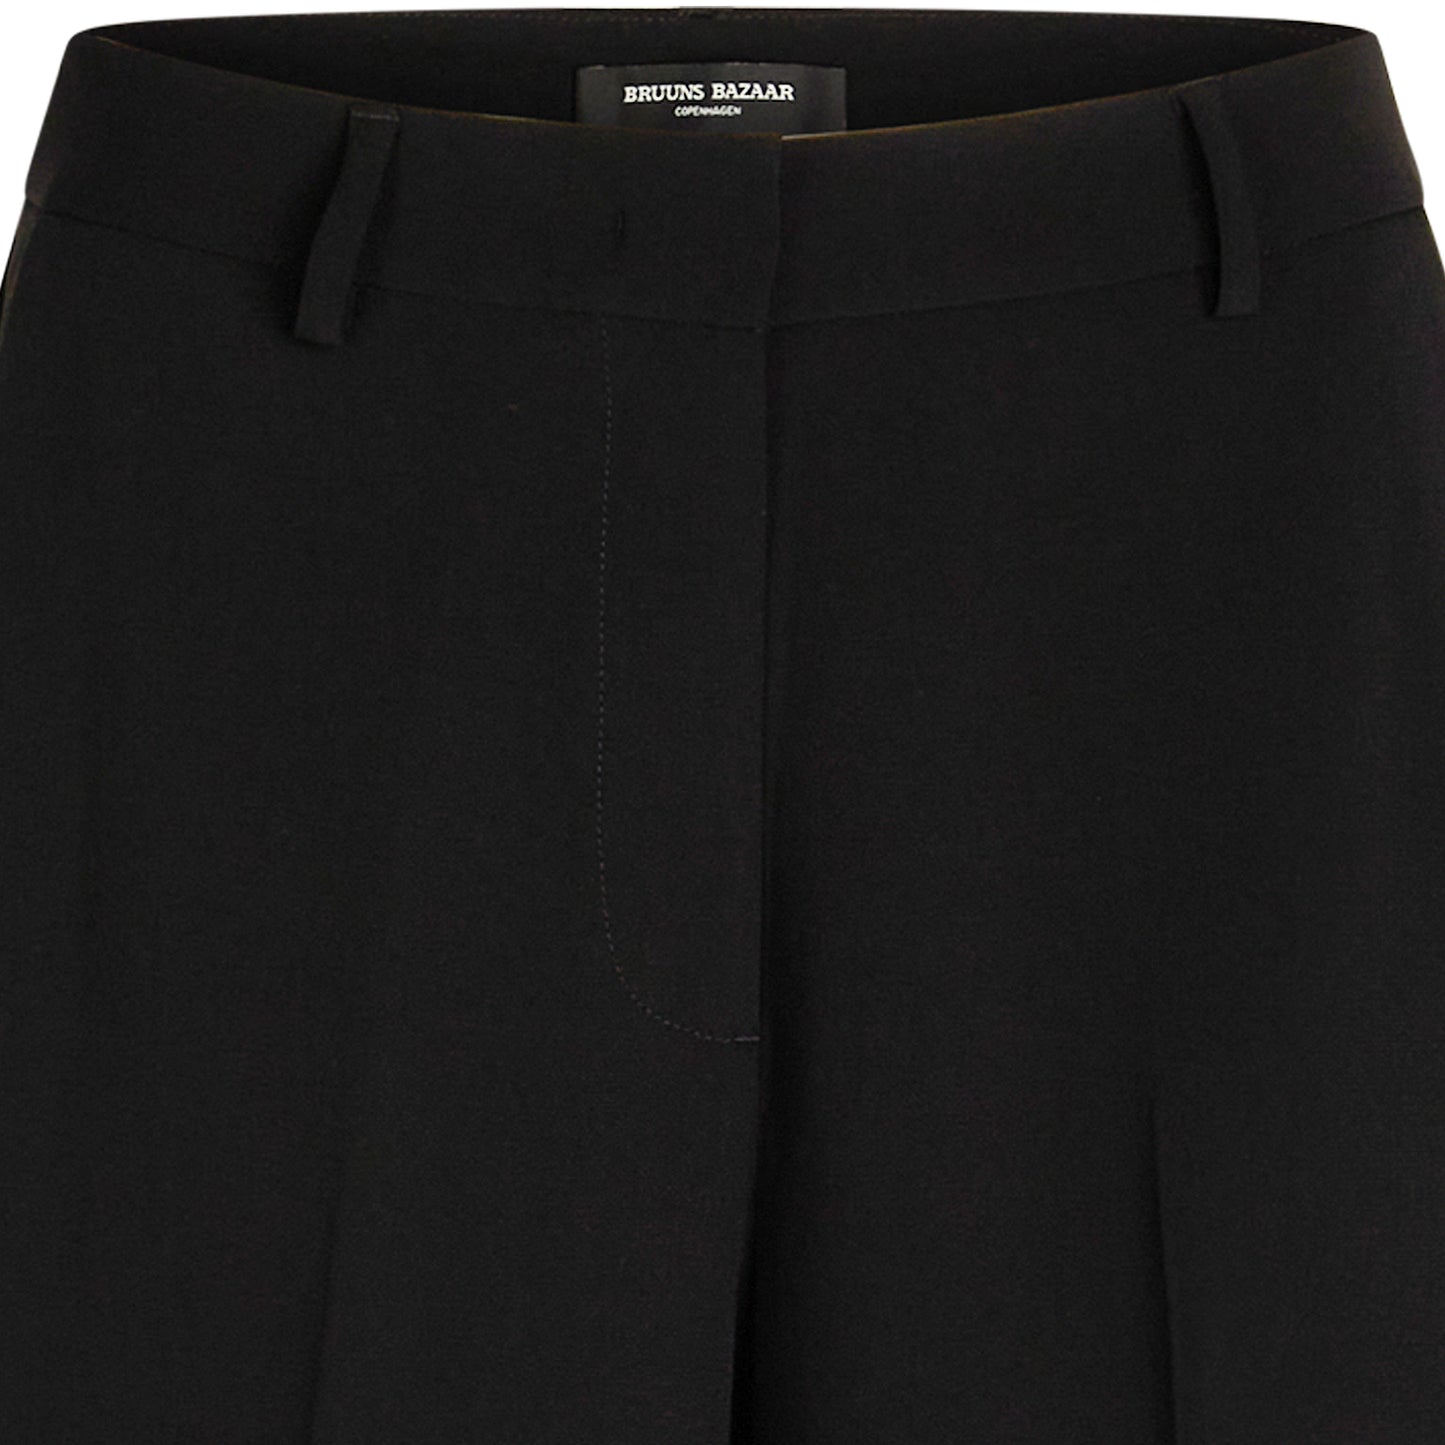 Bruuns Bazaar Women - Brassica Eleza pants - Black